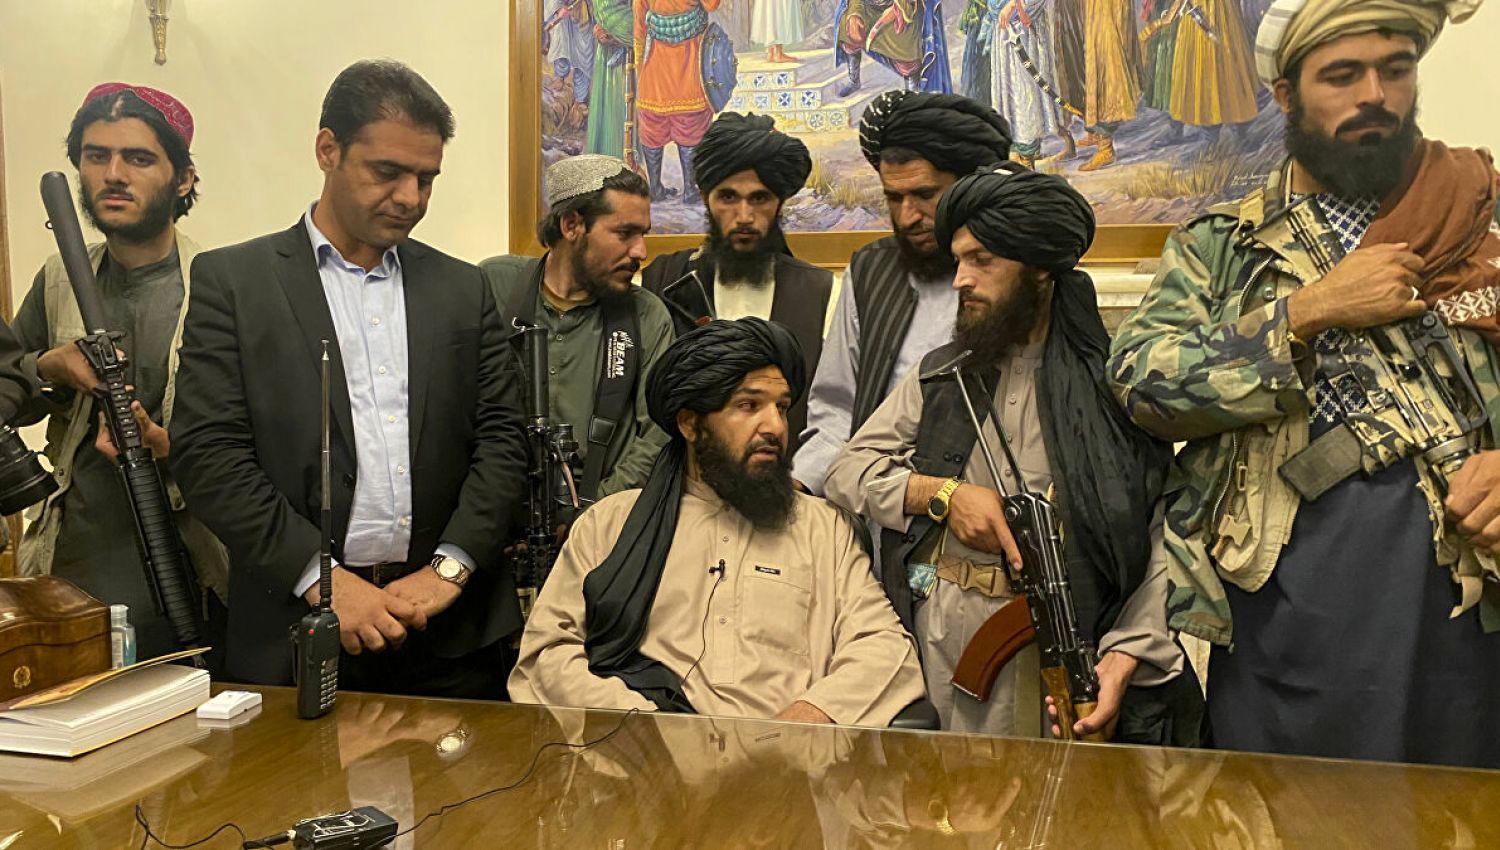 طالبان تواصل مساعيها لاحتواء فوضى الانسحاب الامريكي (آخر مستجدات أفغانستان)